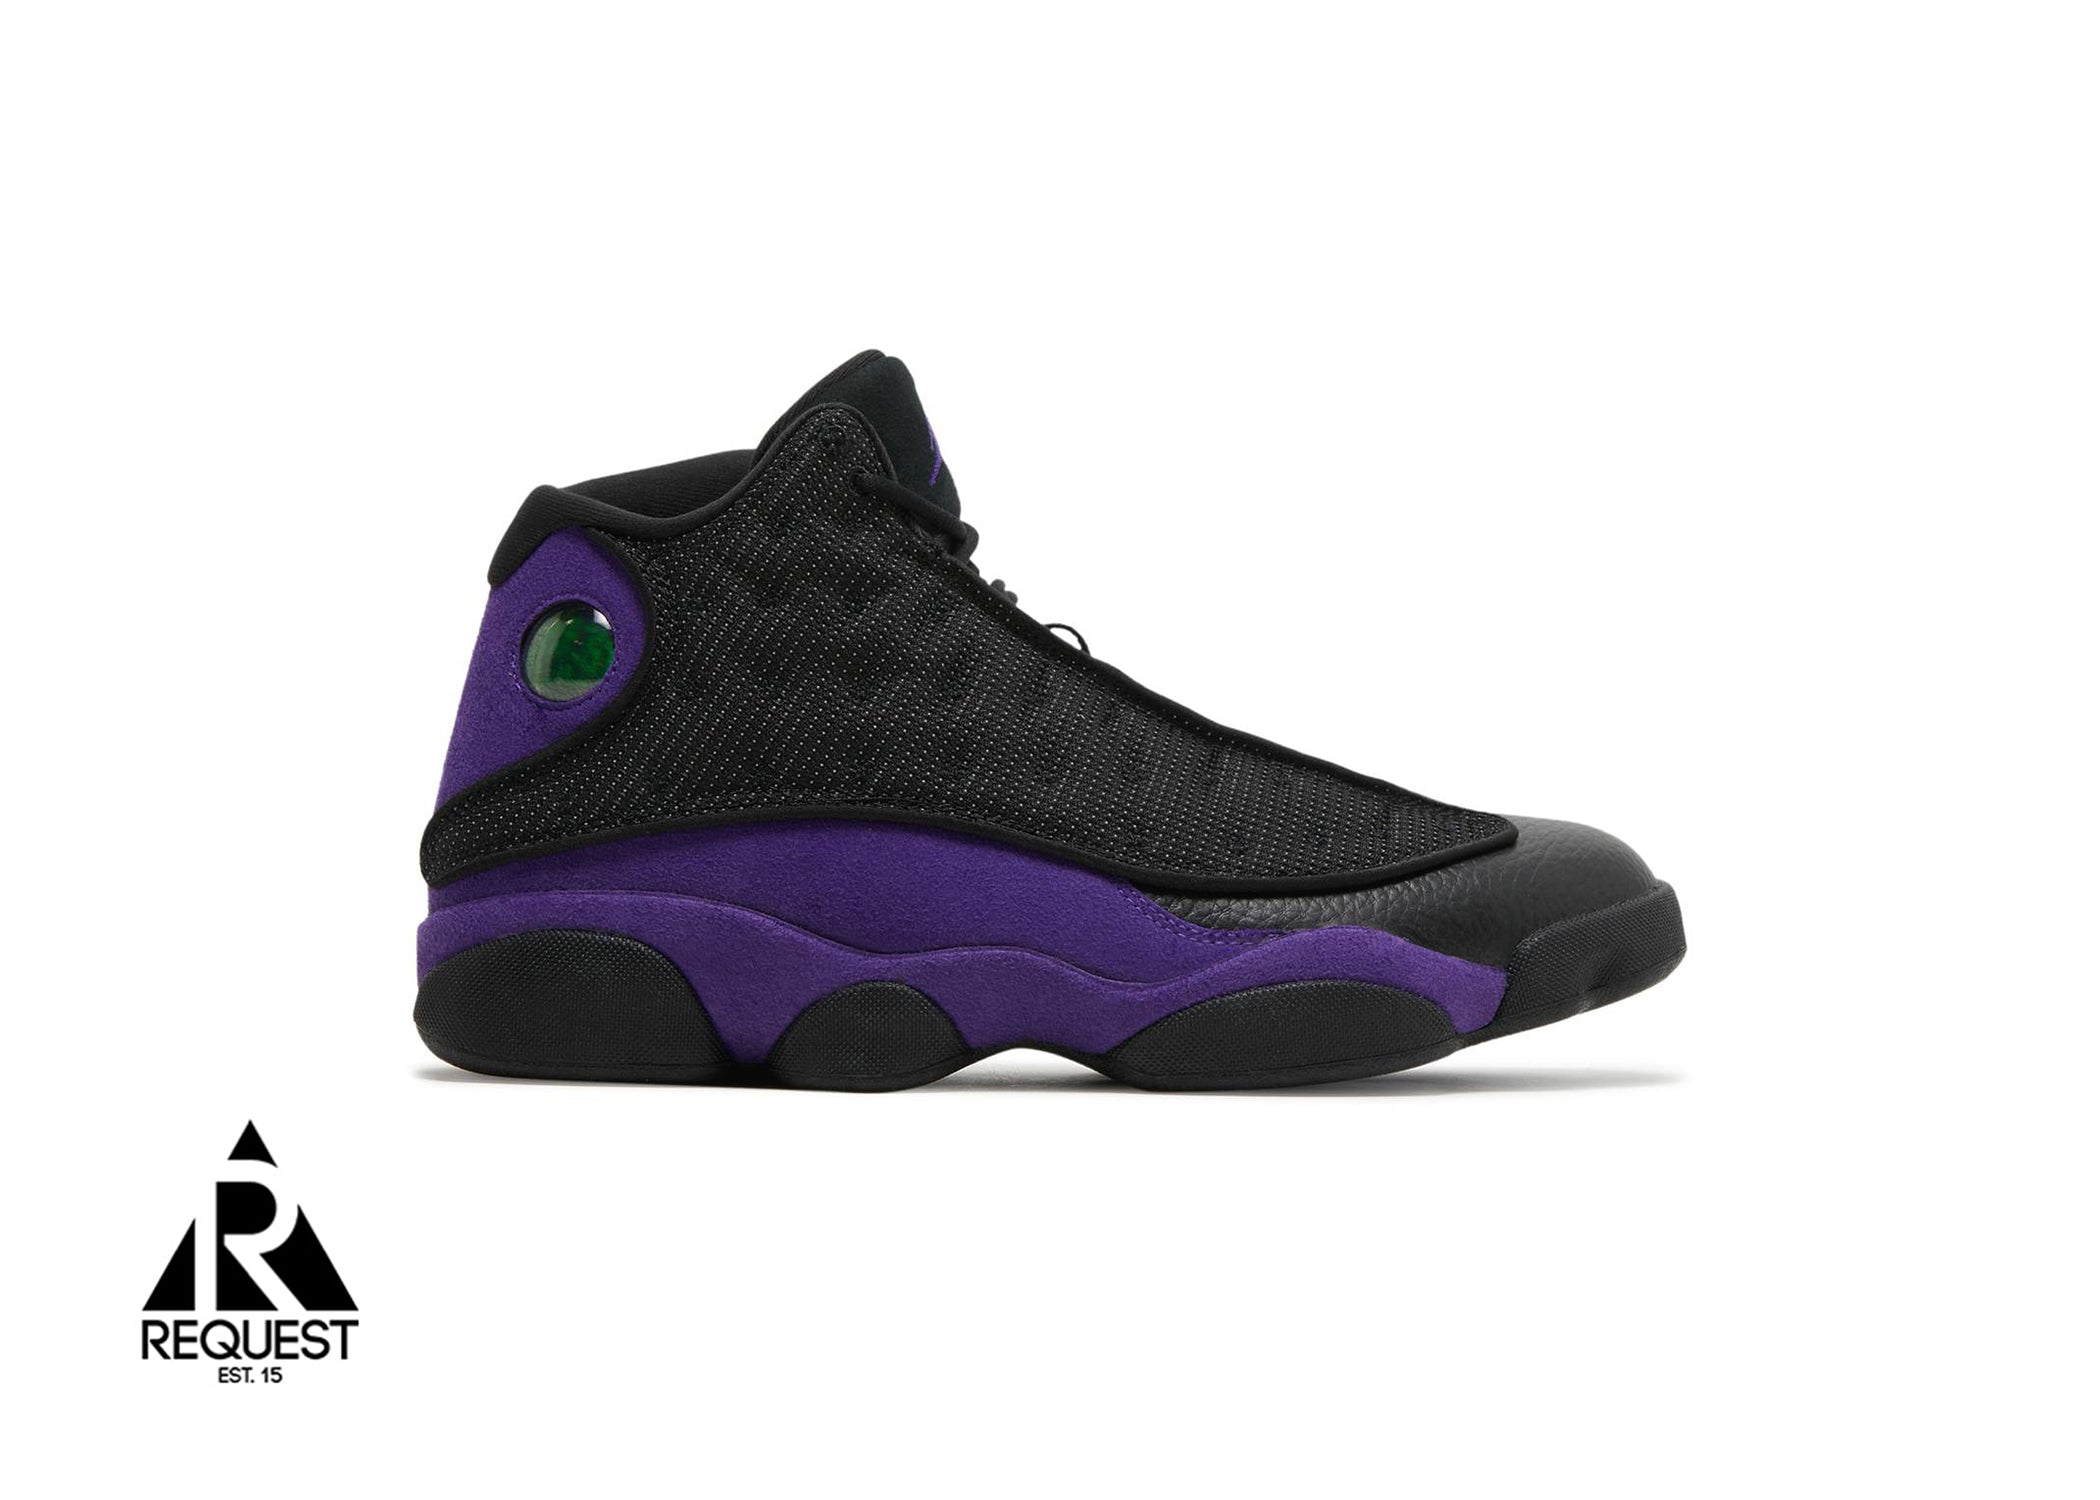 Air Jordan 13 Retro “Court Purple”